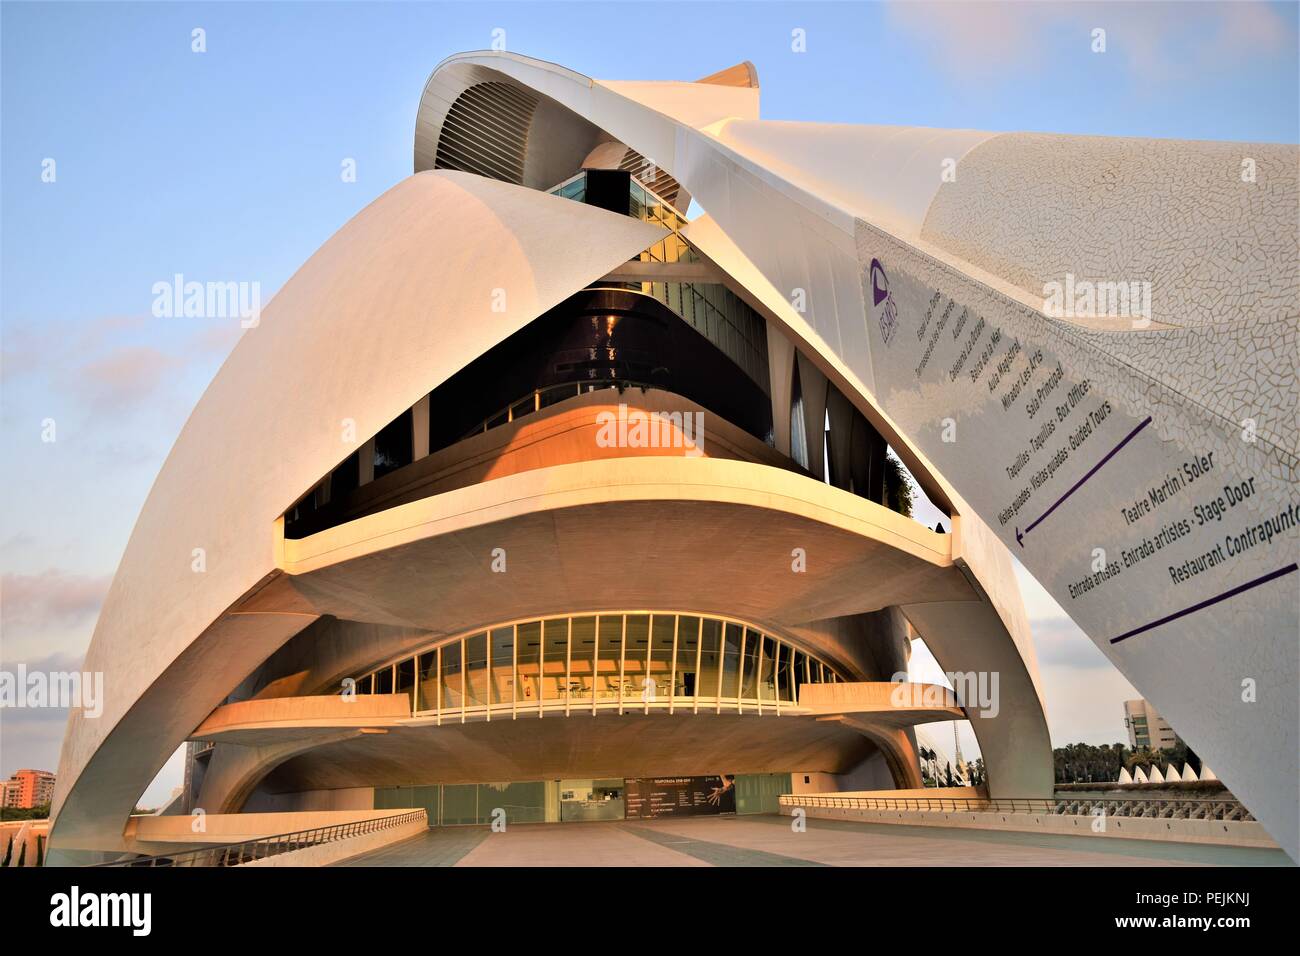 Valencia Kunst und Science Center des Architekten Santiago Calatrava ist ein Meisterwerk der Kunst und moderne Architektur, die beliebteste Touristenattraktion. Stockfoto